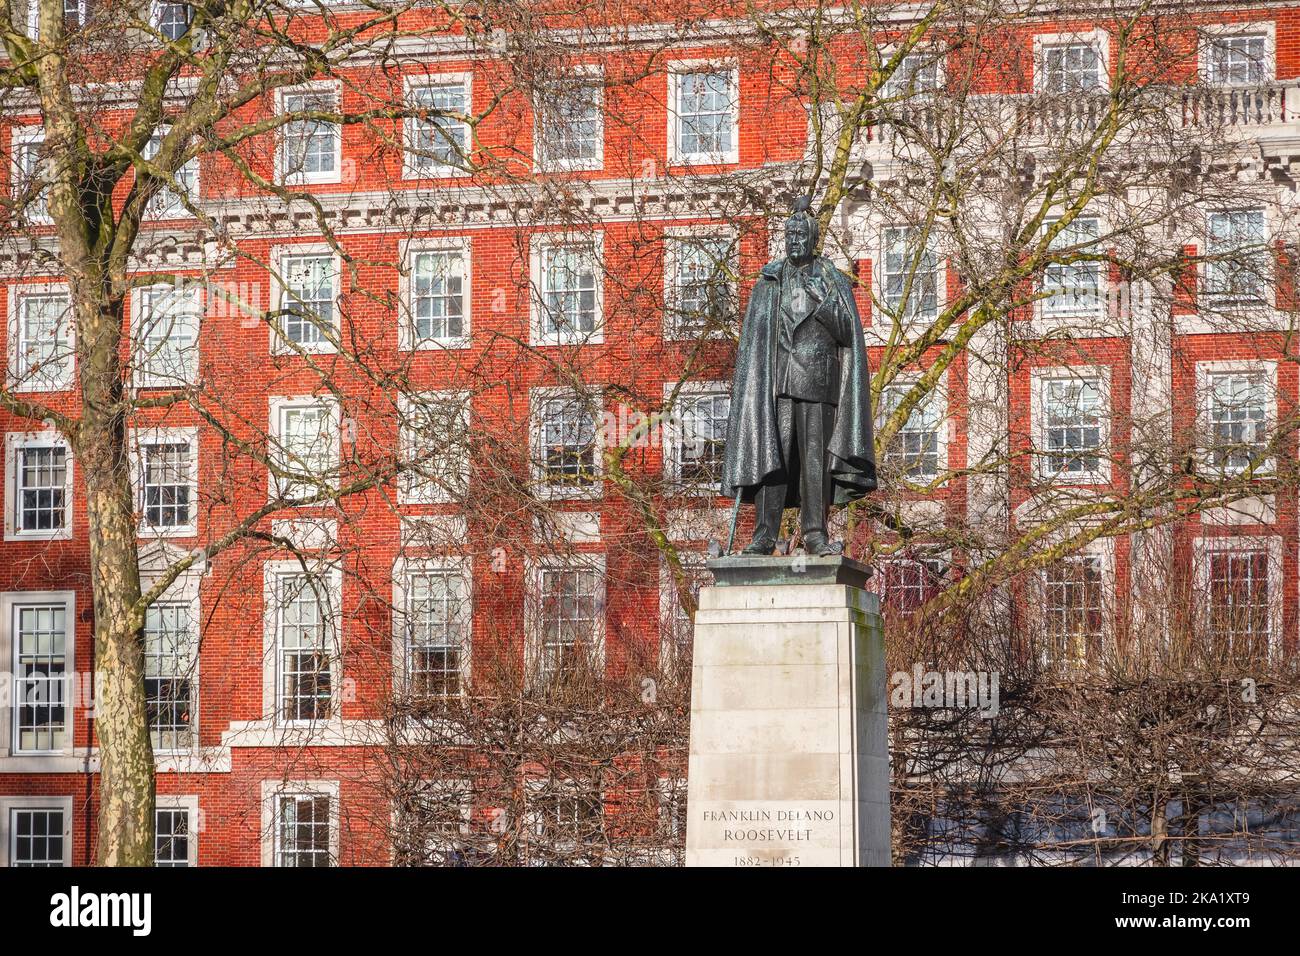 Une statue de Franklin Roosevelt exposée à Grosvenor Square, dans le quartier de Mayfair à Londres, au Royaume-Uni Banque D'Images